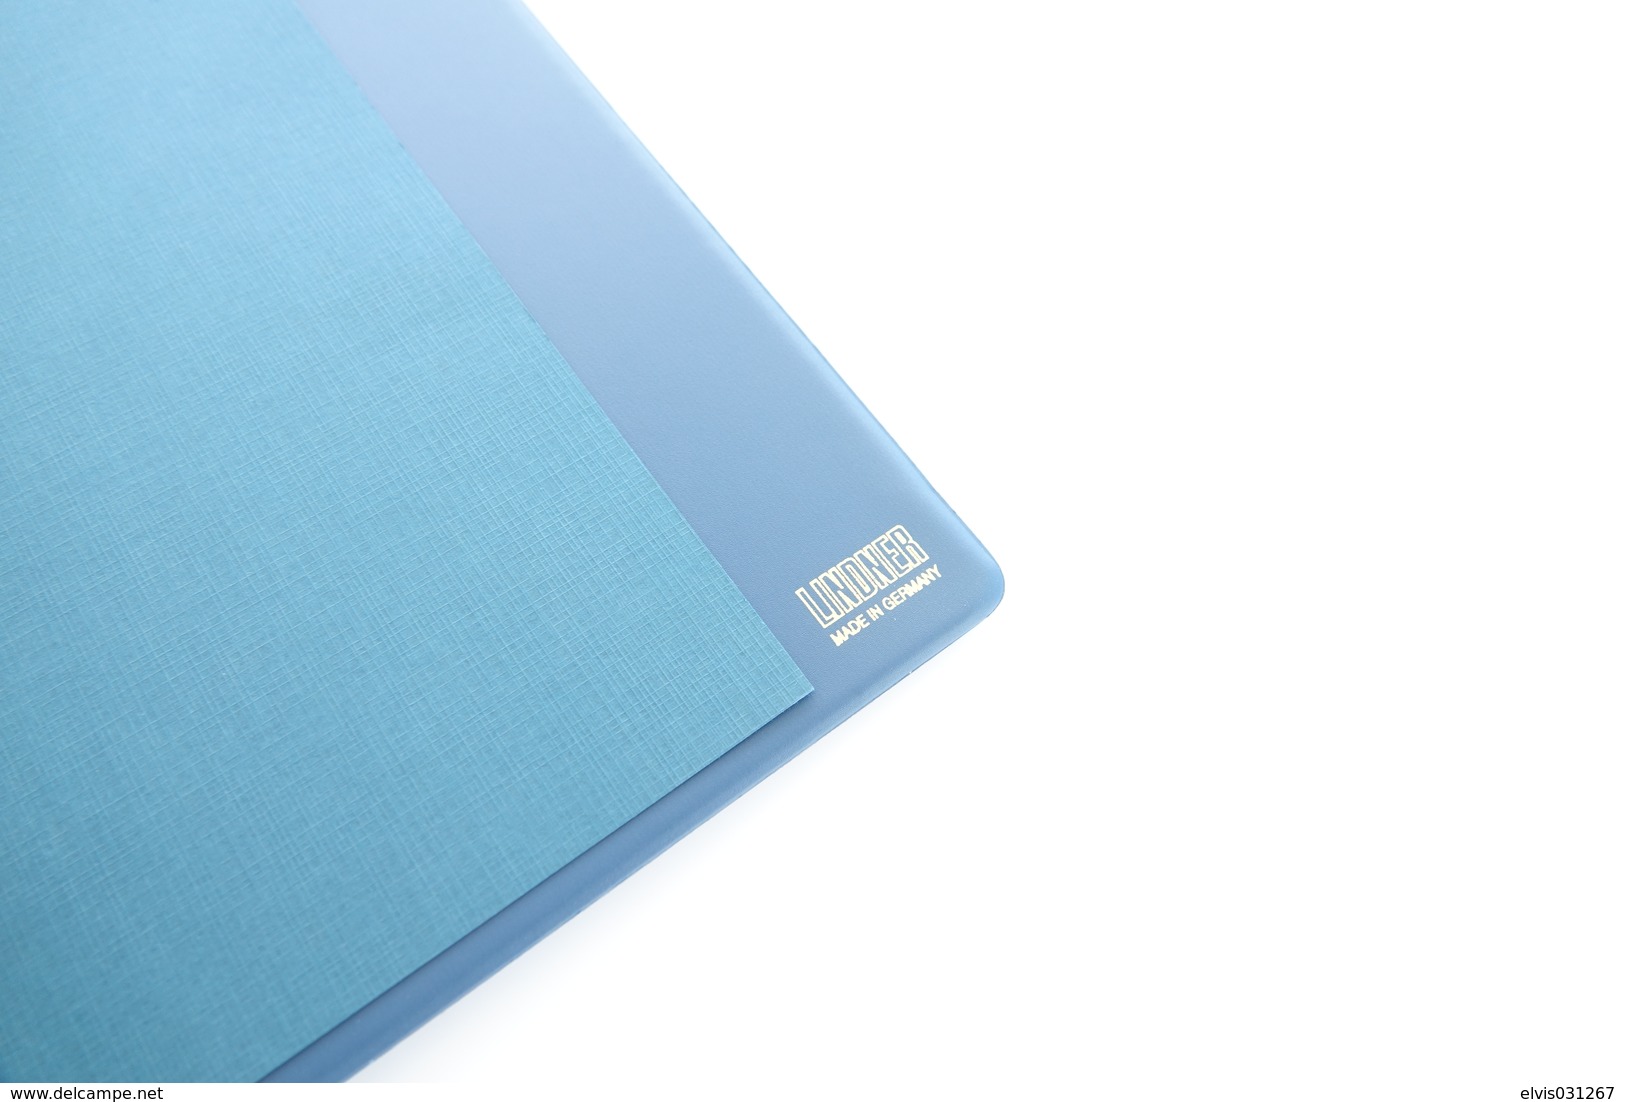 Israel Album - Lindner Album, Blue, 18 rings, format 5x30x32cm